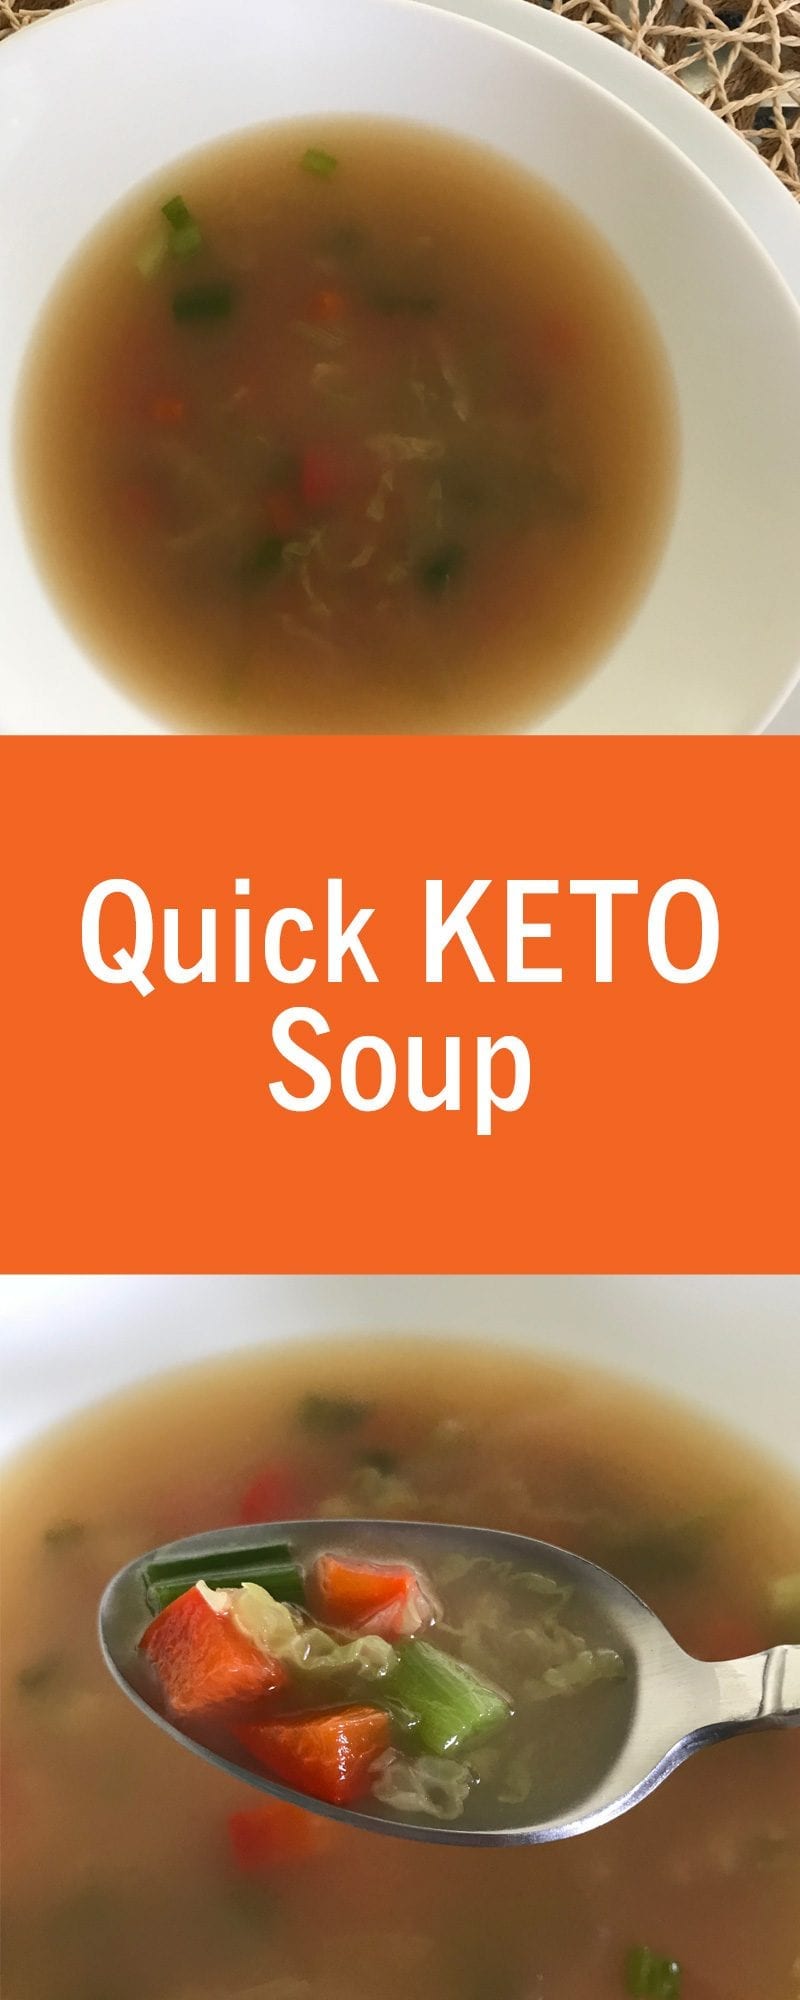 Quick KETO Soup Recipe